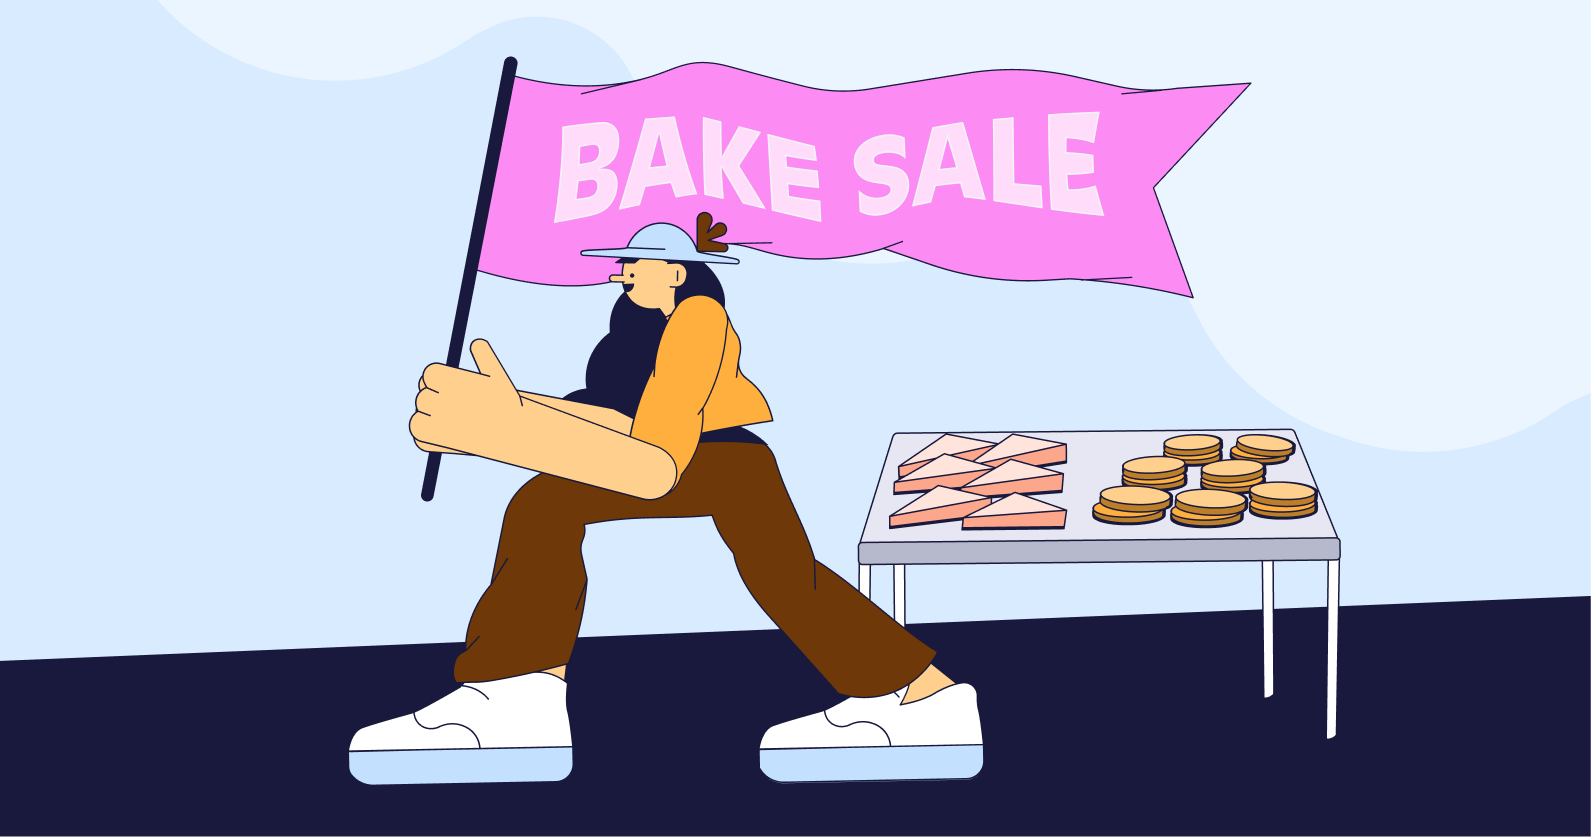 Illustration of a bake sale.